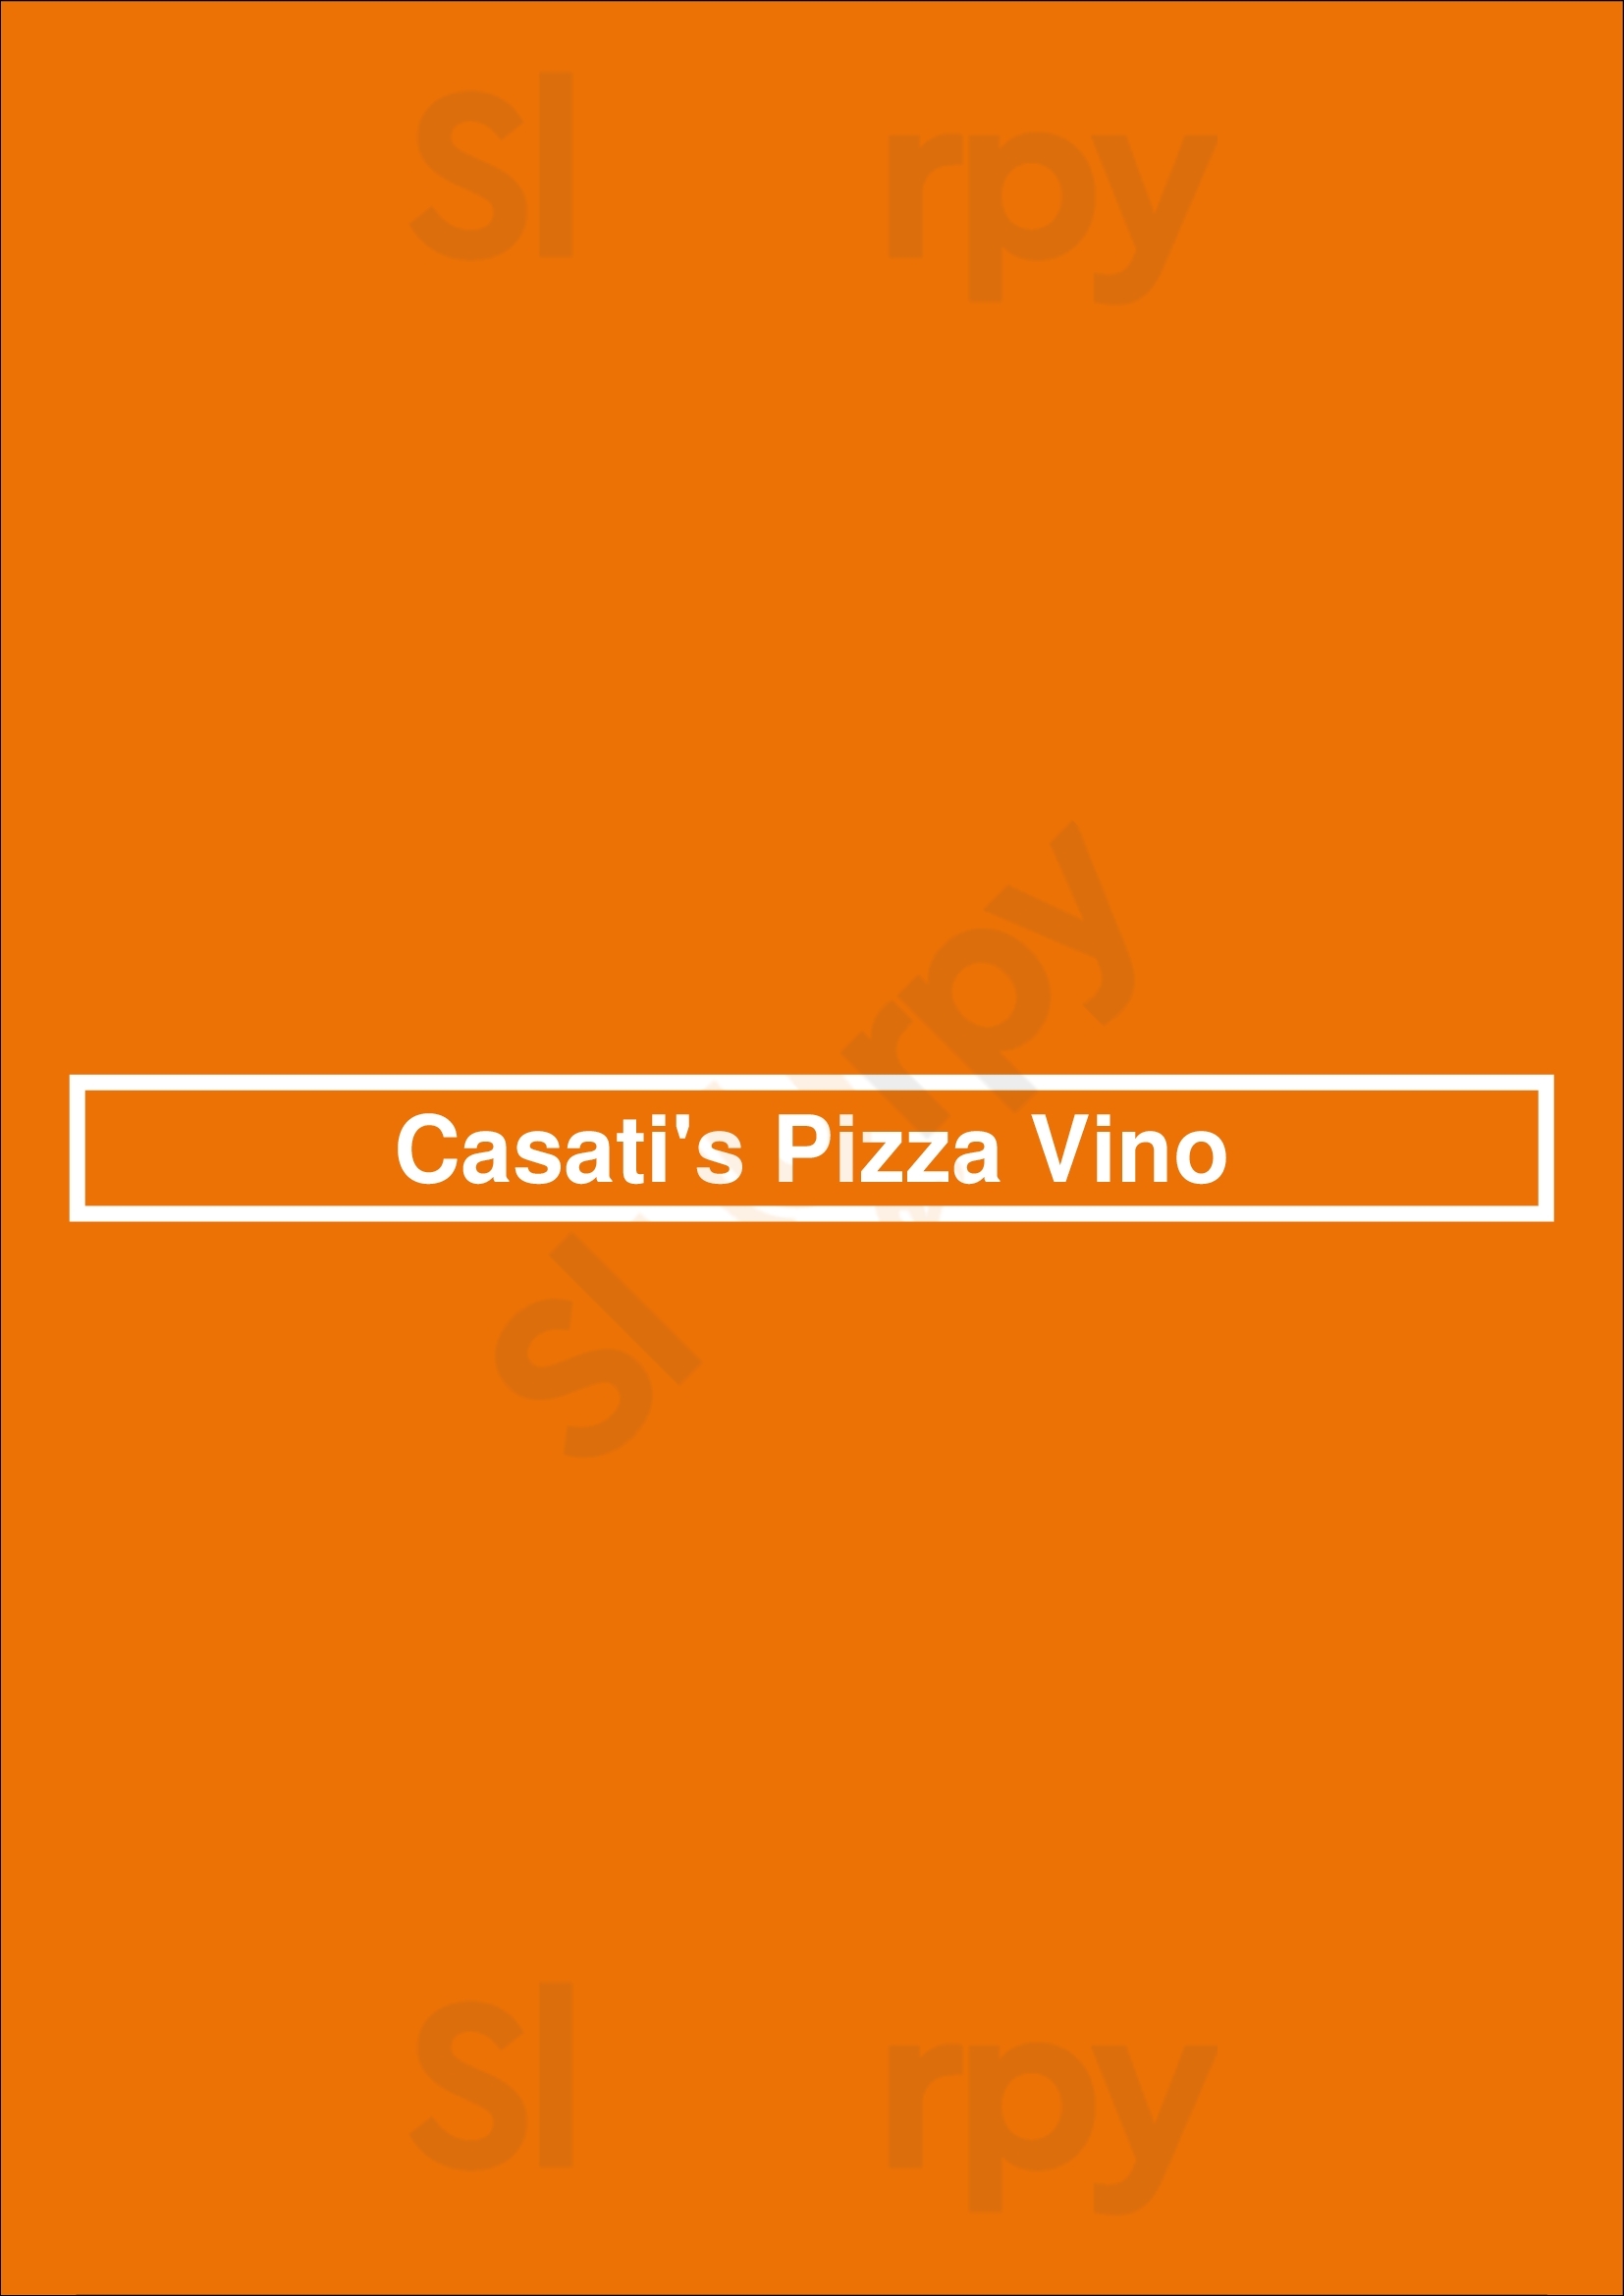 Casati's Pizza Vino Chicago Menu - 1